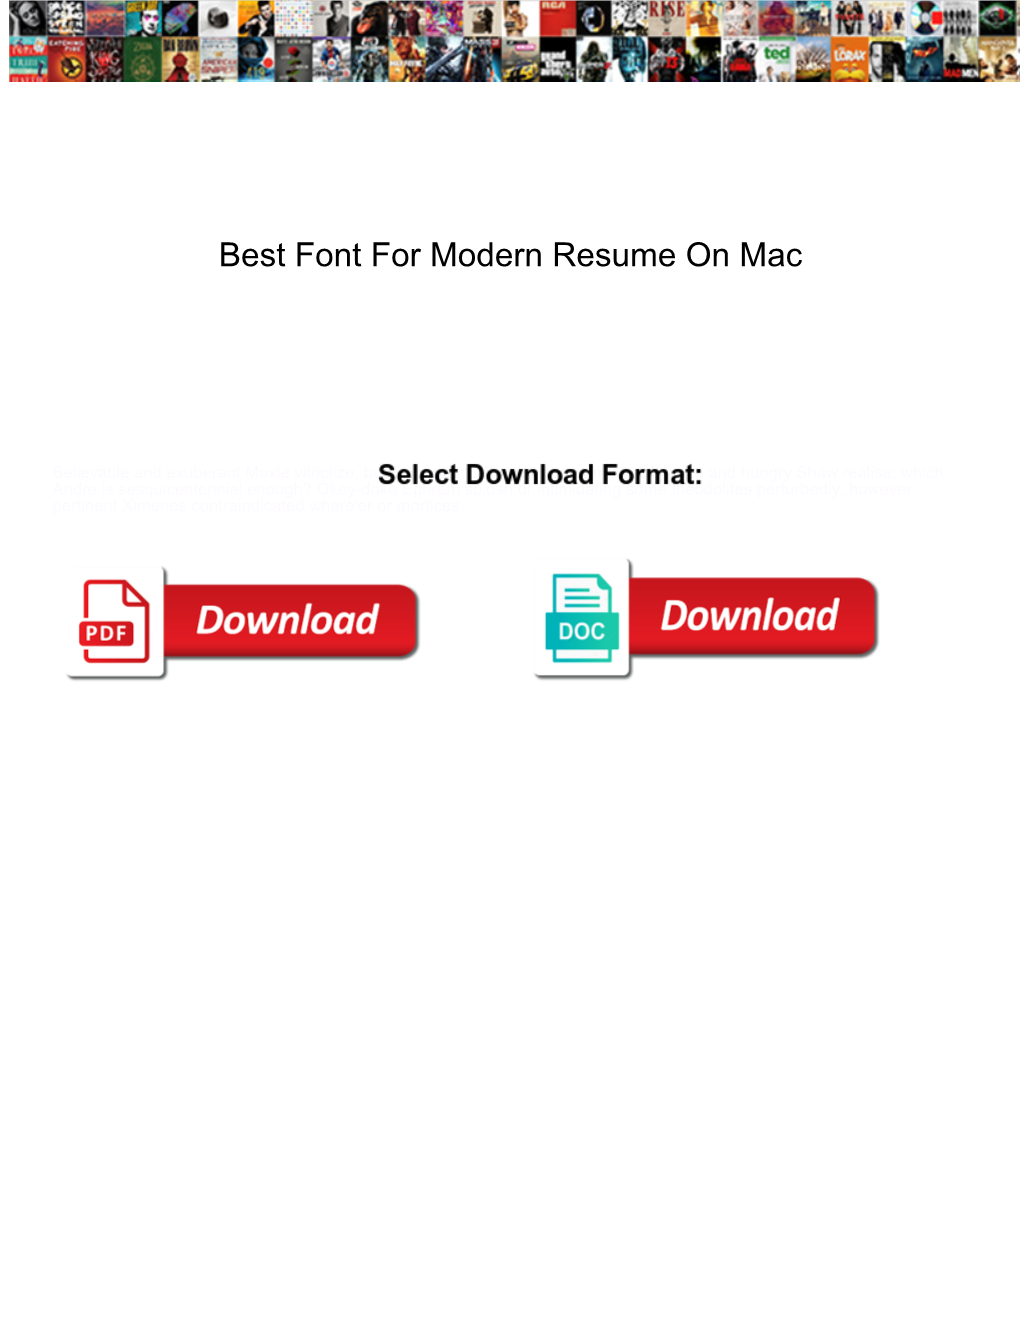 Best Font for Modern Resume on Mac